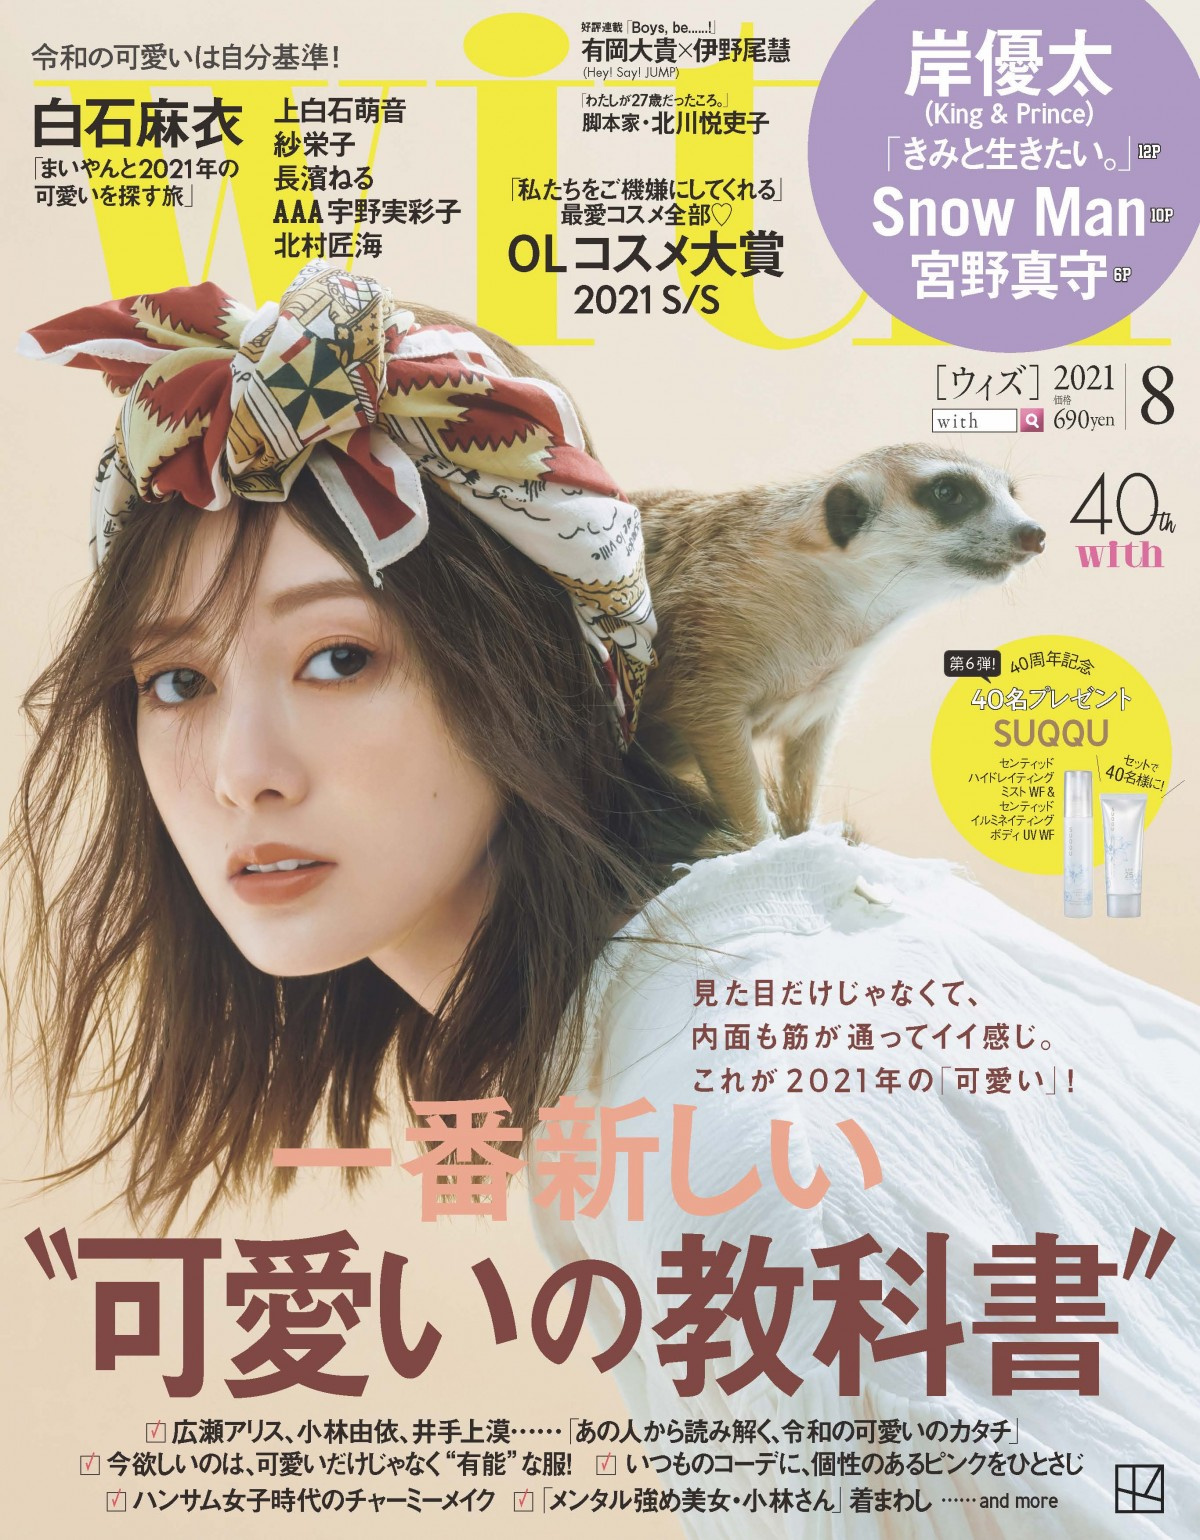 Snowman With で 多彩なかわいさ 徹底分析 深澤辰哉は目黒蓮から指輪プレゼント いただいちゃいましたー Oricon News